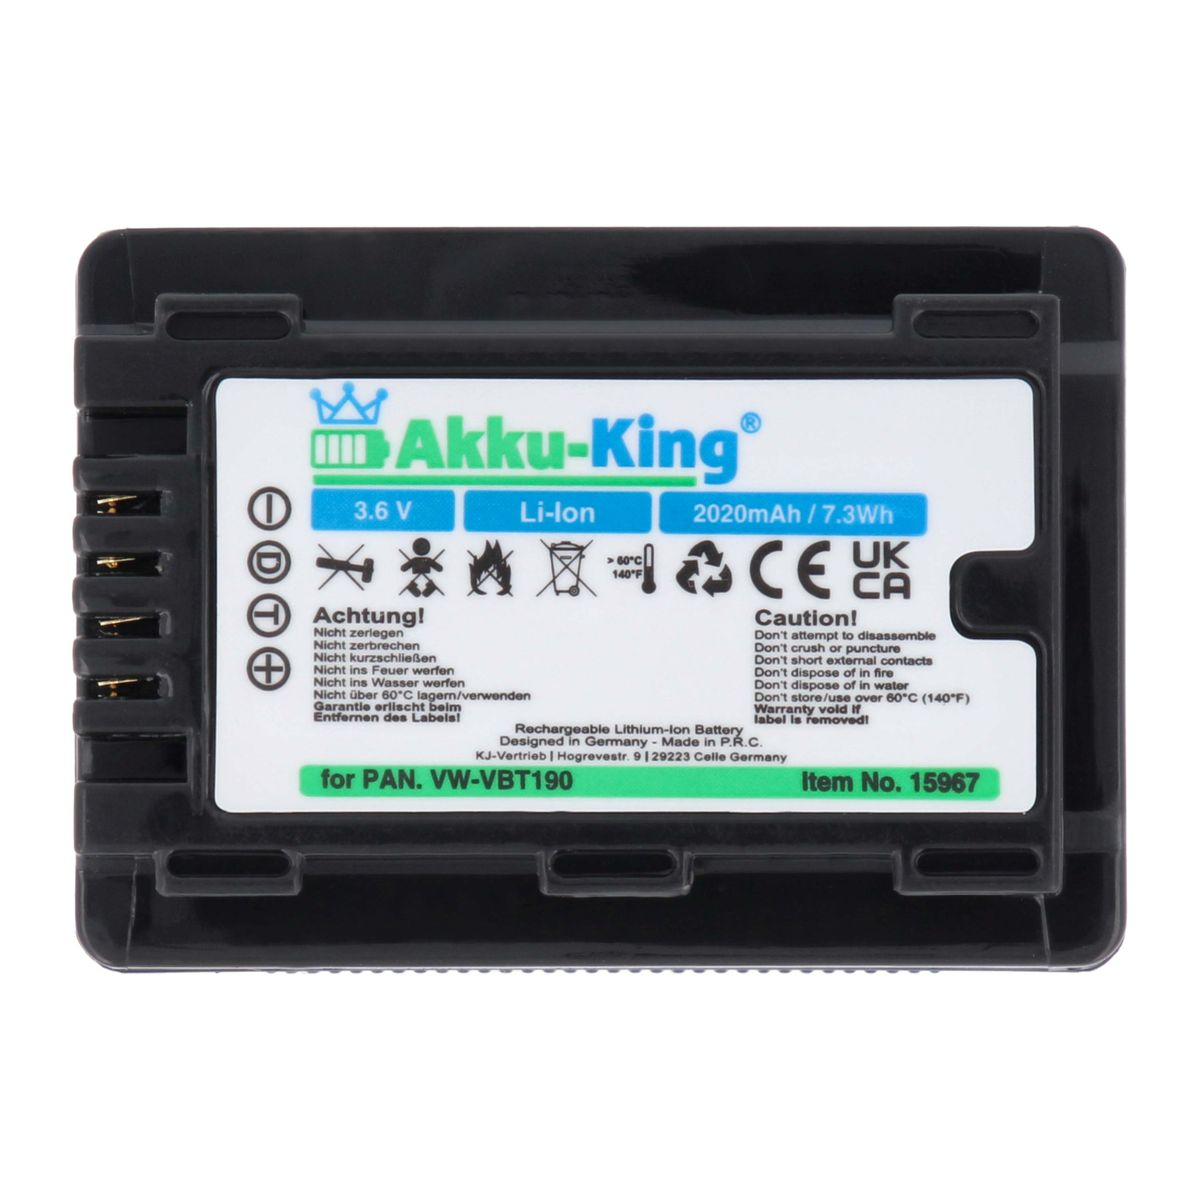 AKKU-KING Akku kompatibel mit Panasonic 3.6 VW-VBT190 Li-Ion Volt, 2020mAh Kamera-Akku